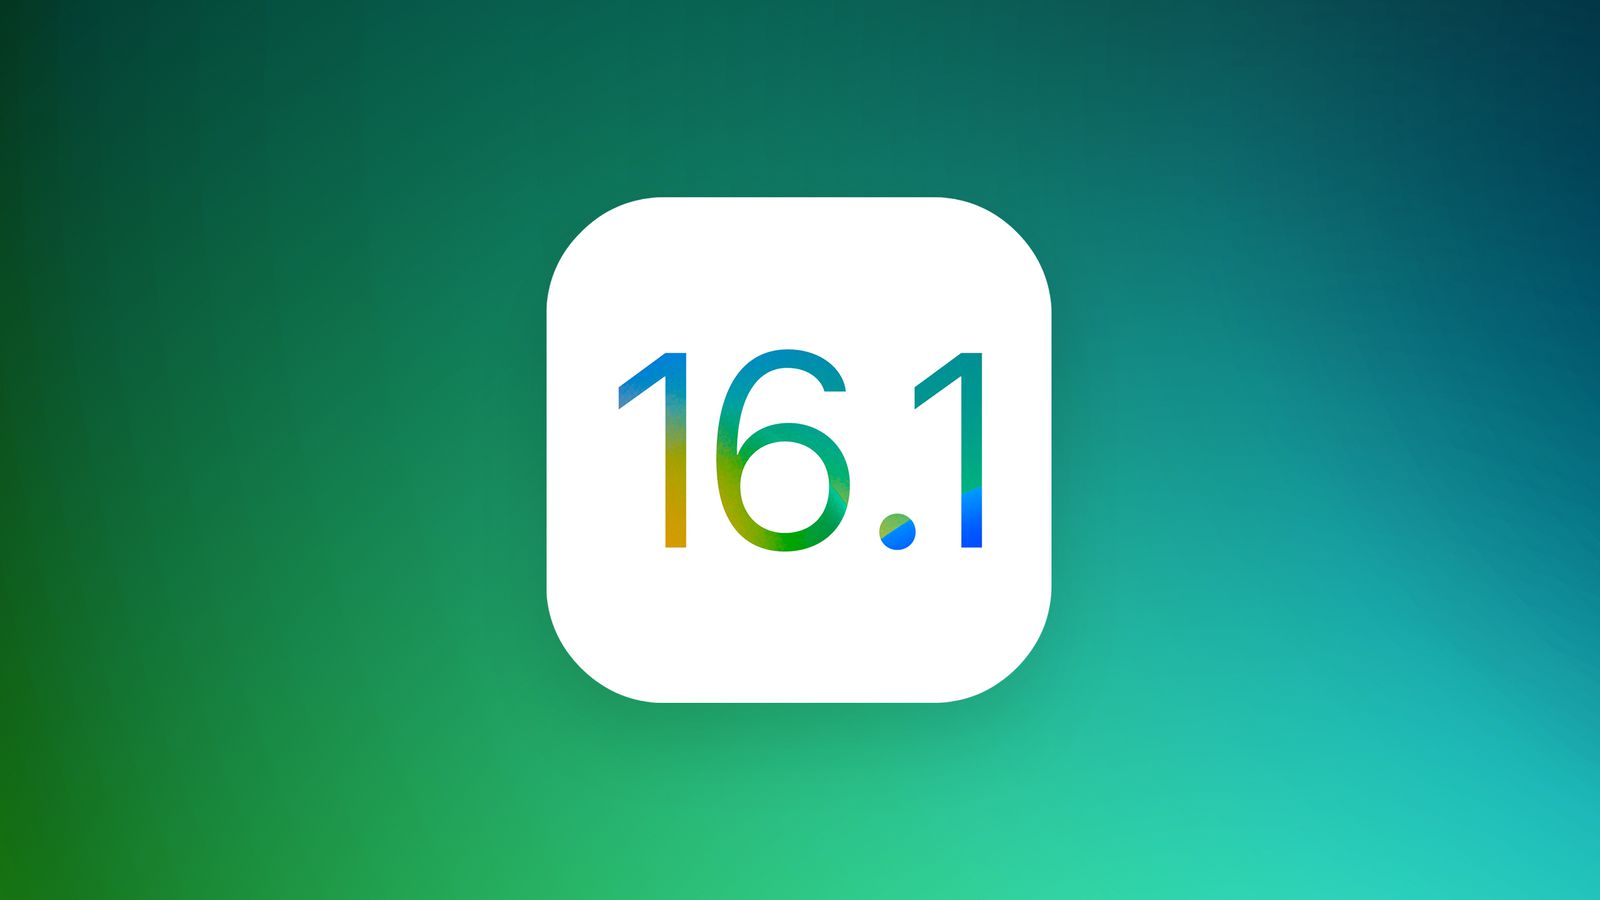 Apple выпустила iOS 16.1 beta 1 для разработчиков. Что нового